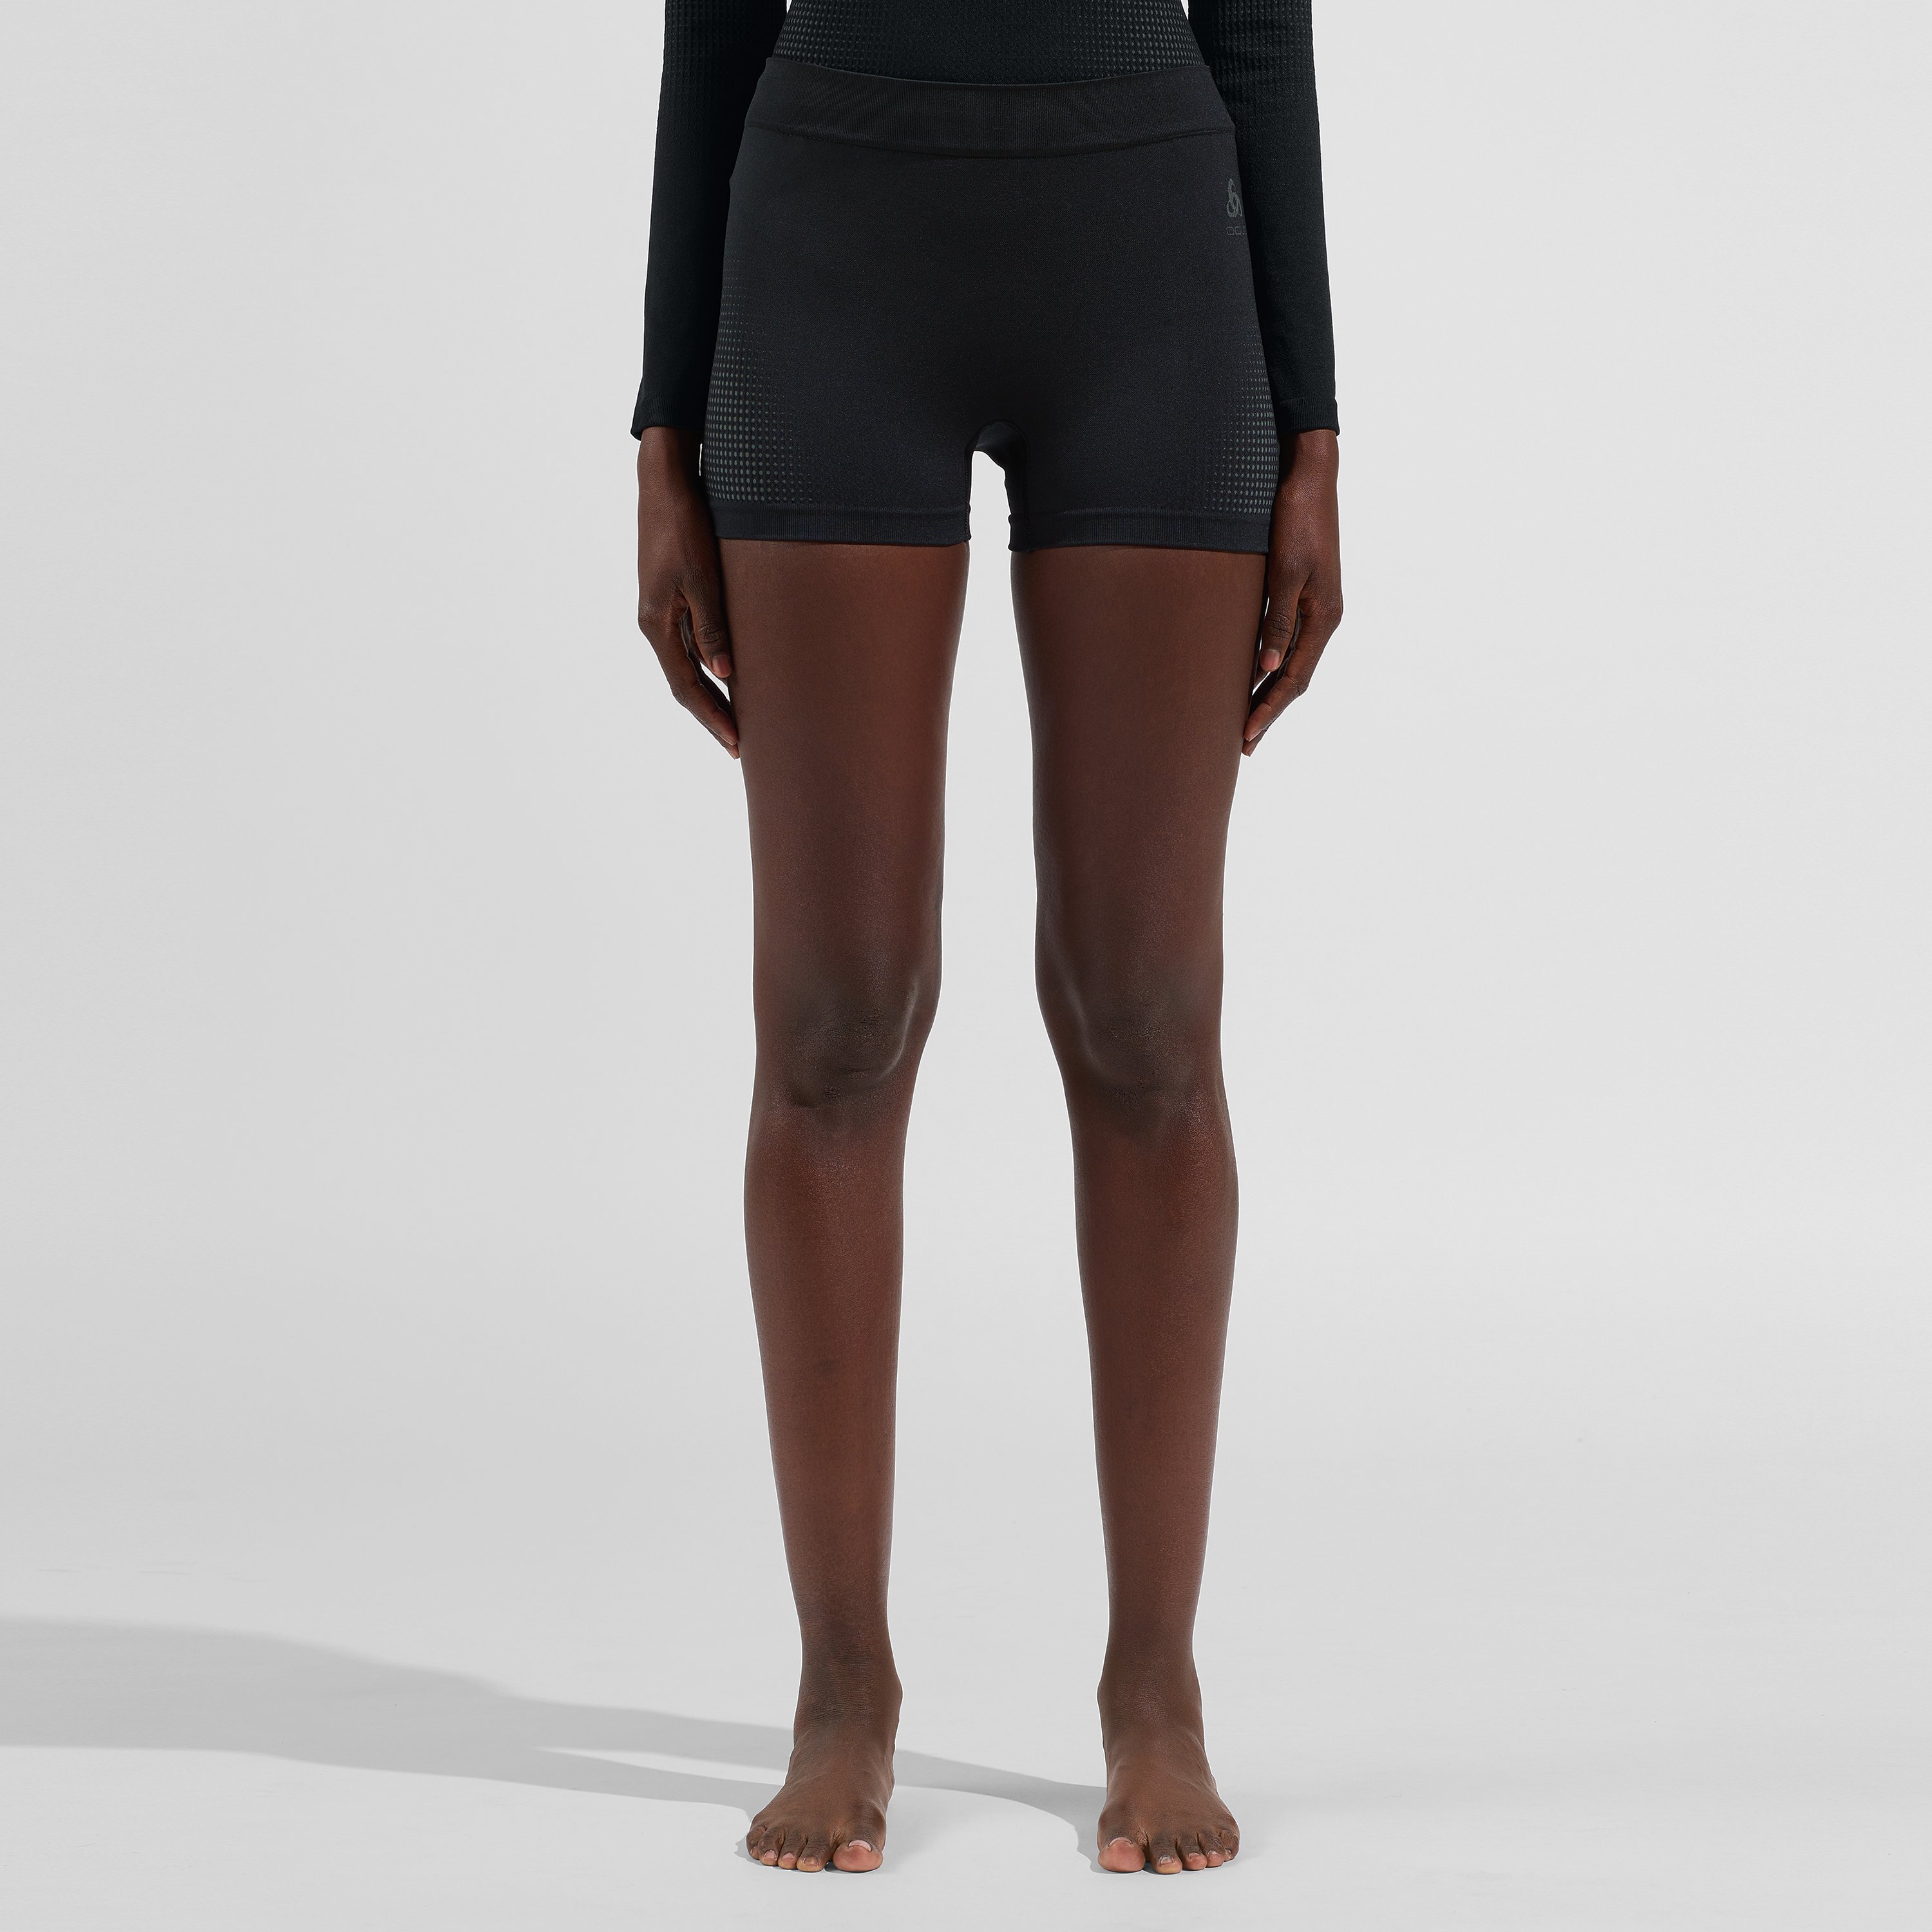 ODLO Performance Warm Sport-Panty für Damen, S, schwarz